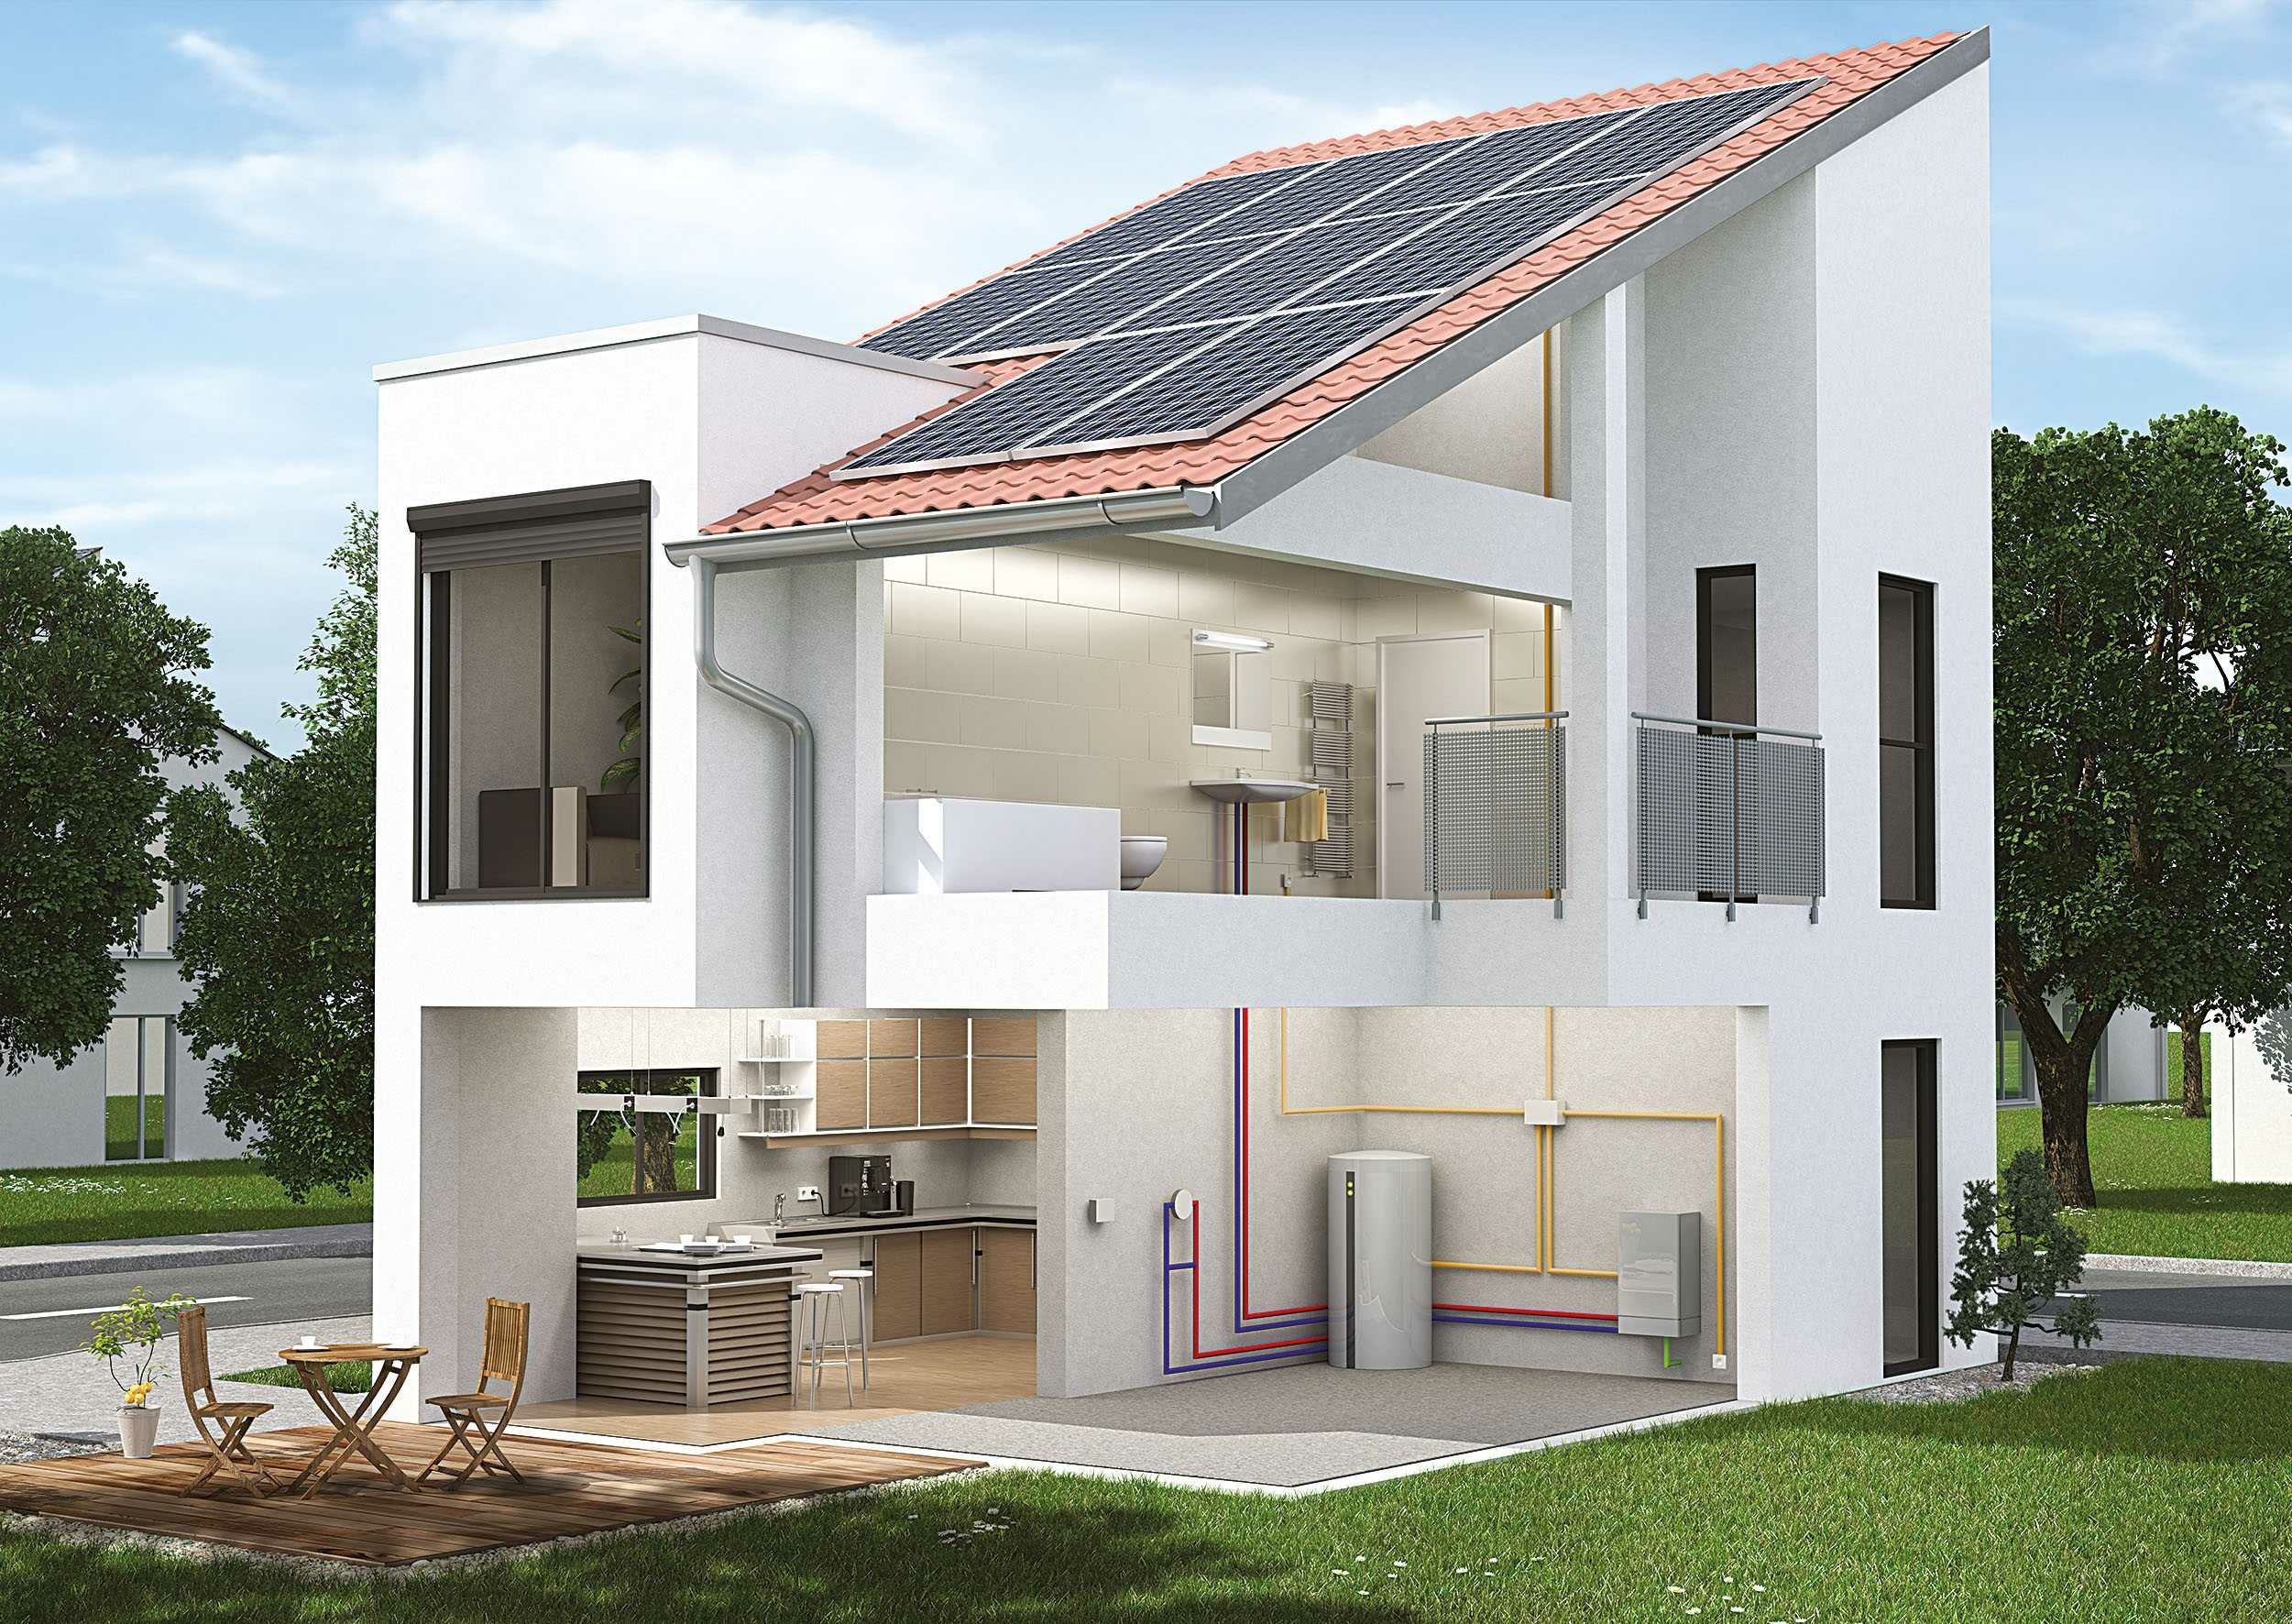 Möglichkeit für den Einbau der Brennstoffzelle in das Haus: Querschnitt eines Hauses